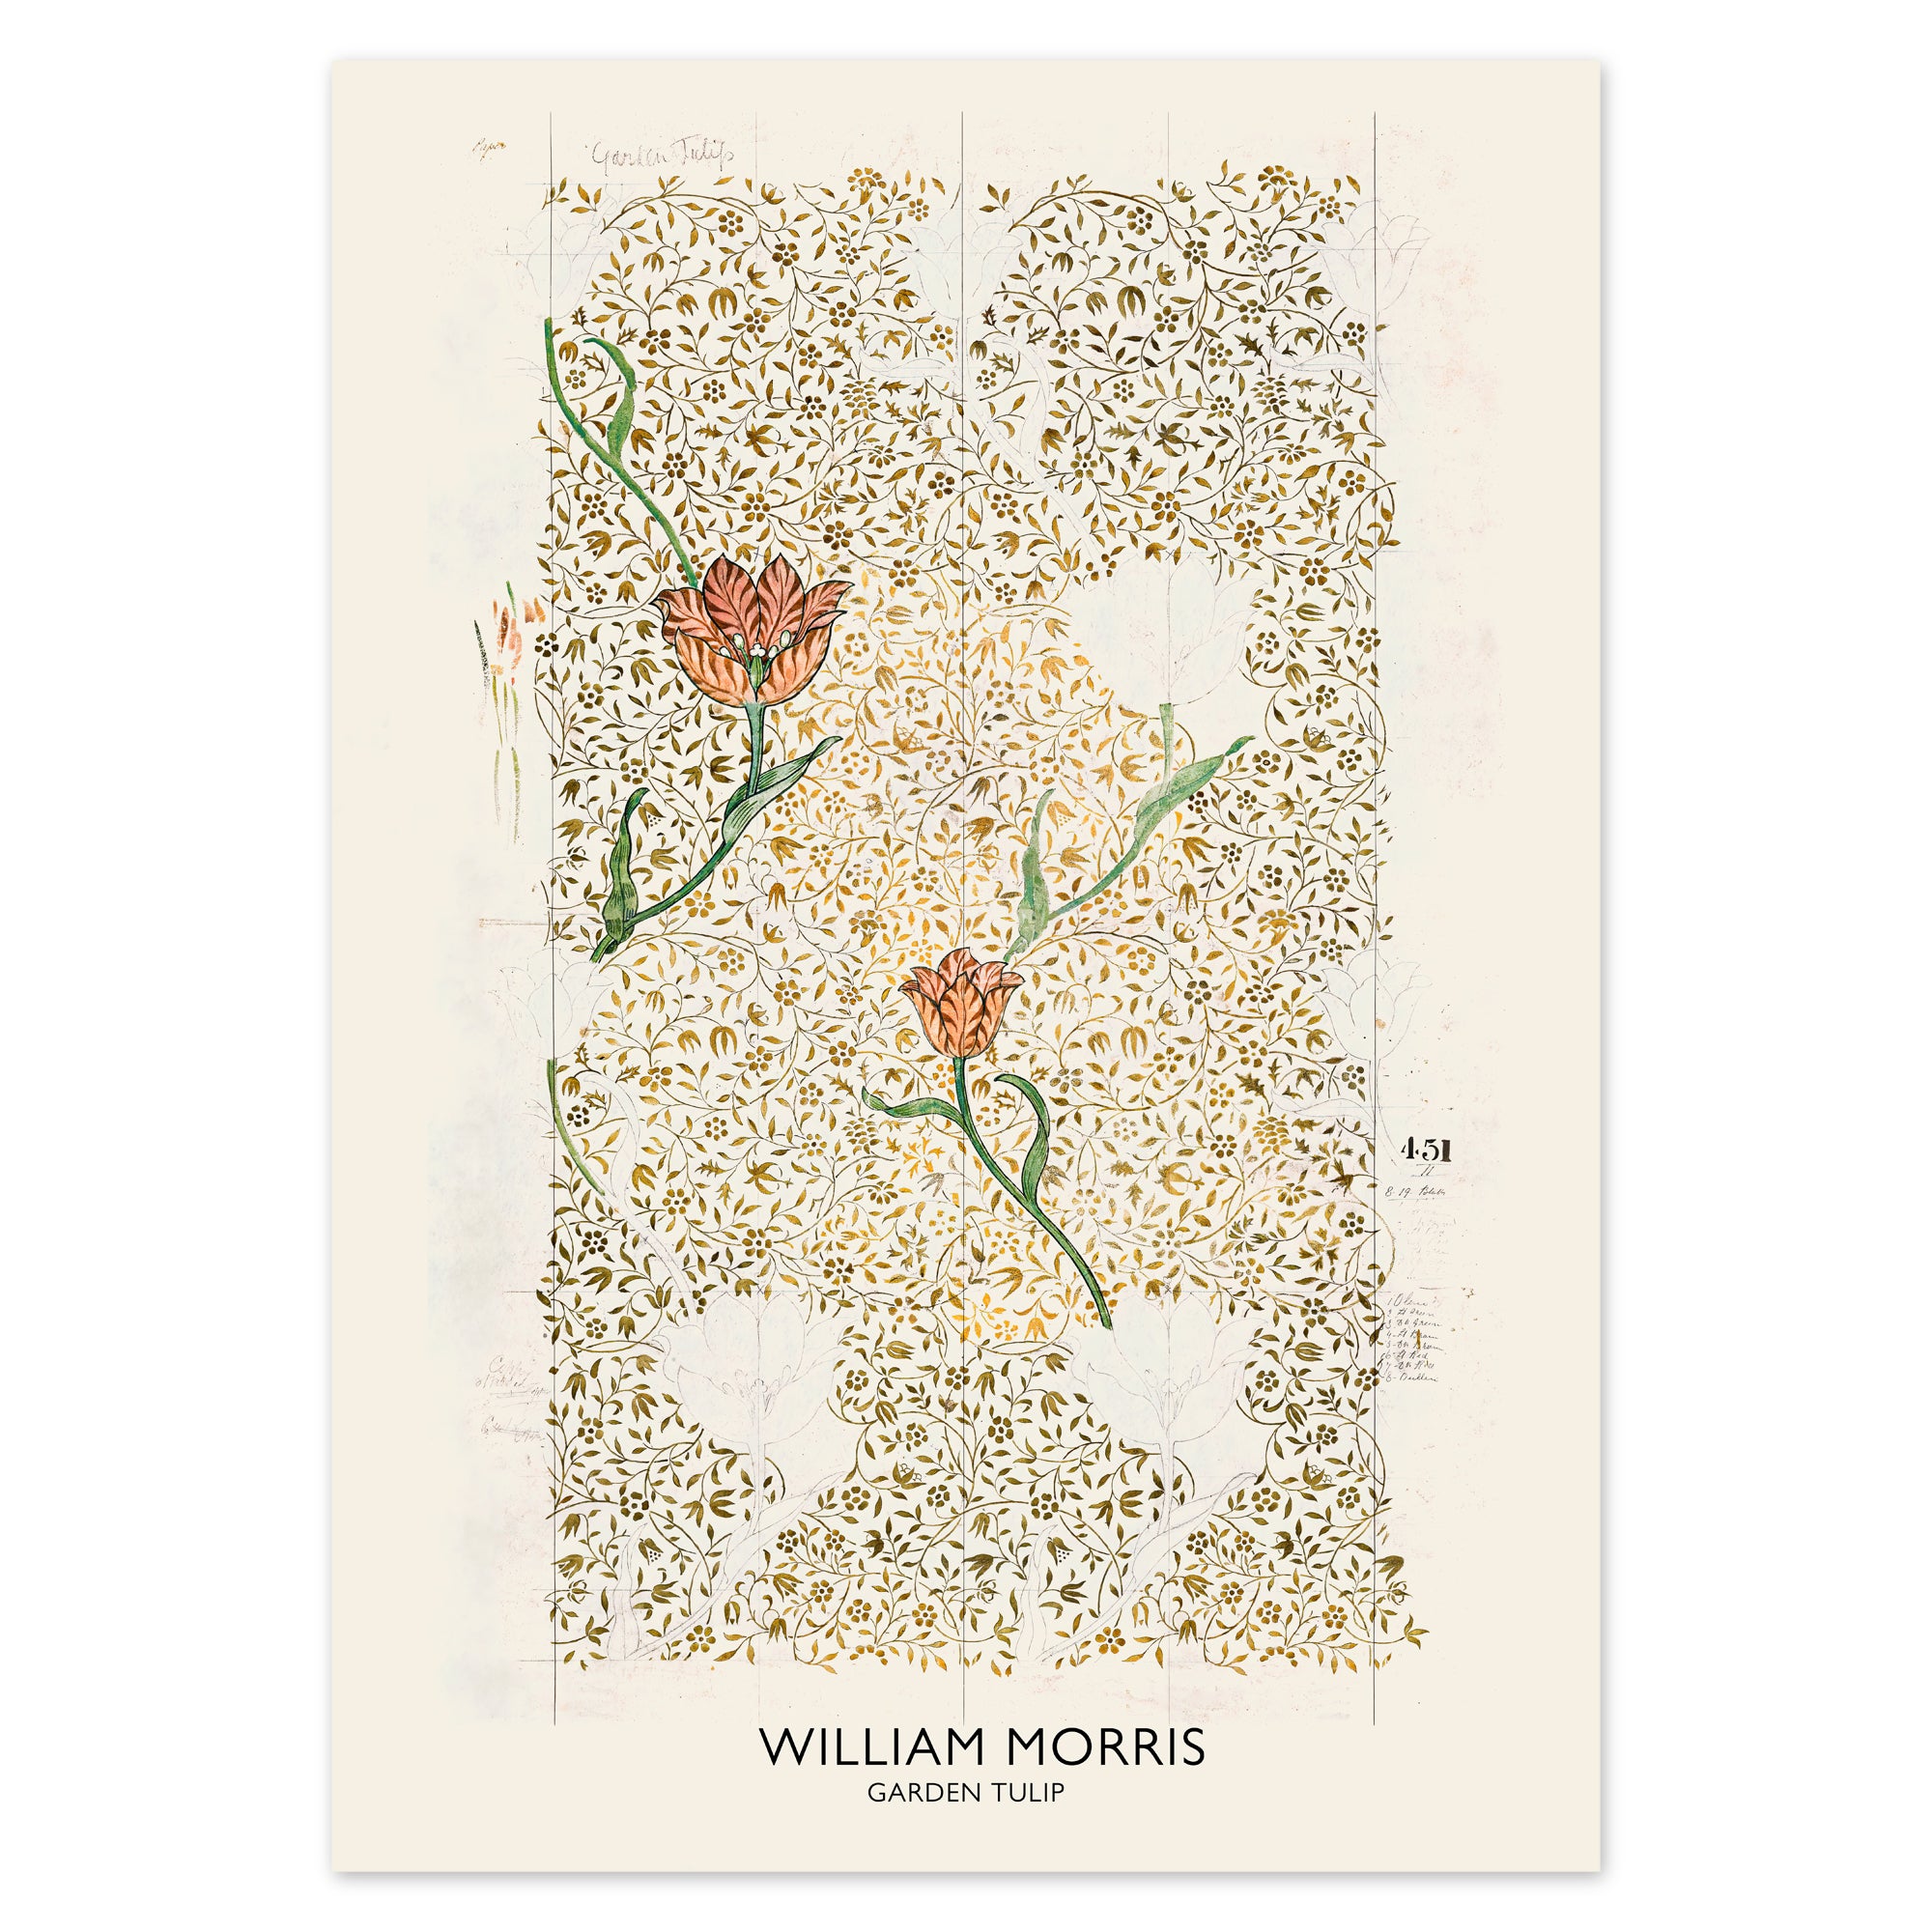 William Morris Poster - Garden Tulip